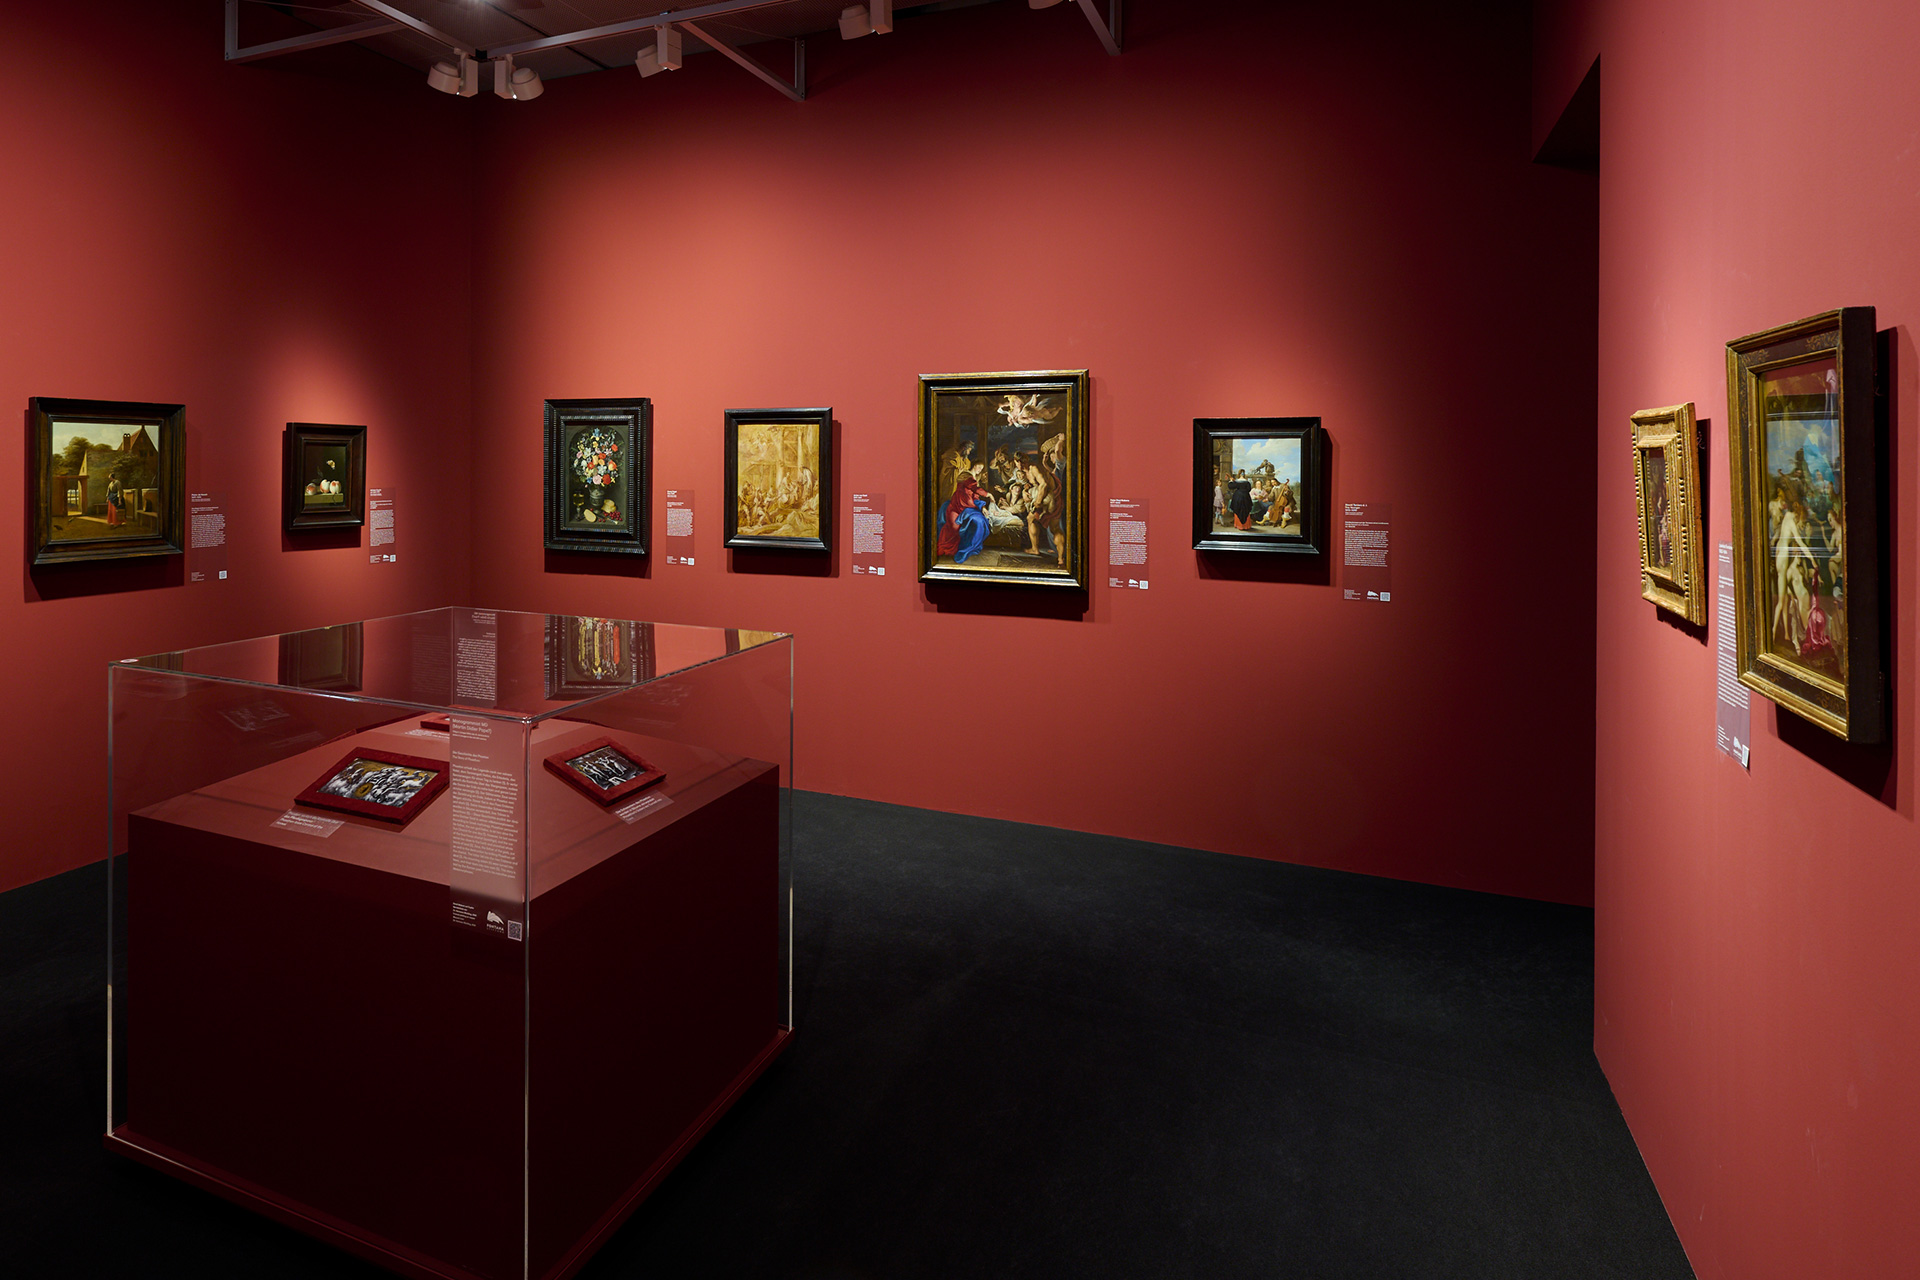 Ausstellungsansicht von einem roten Raum in dem einige Gemälde hängen. In der Mitte steht eine Vitrine.